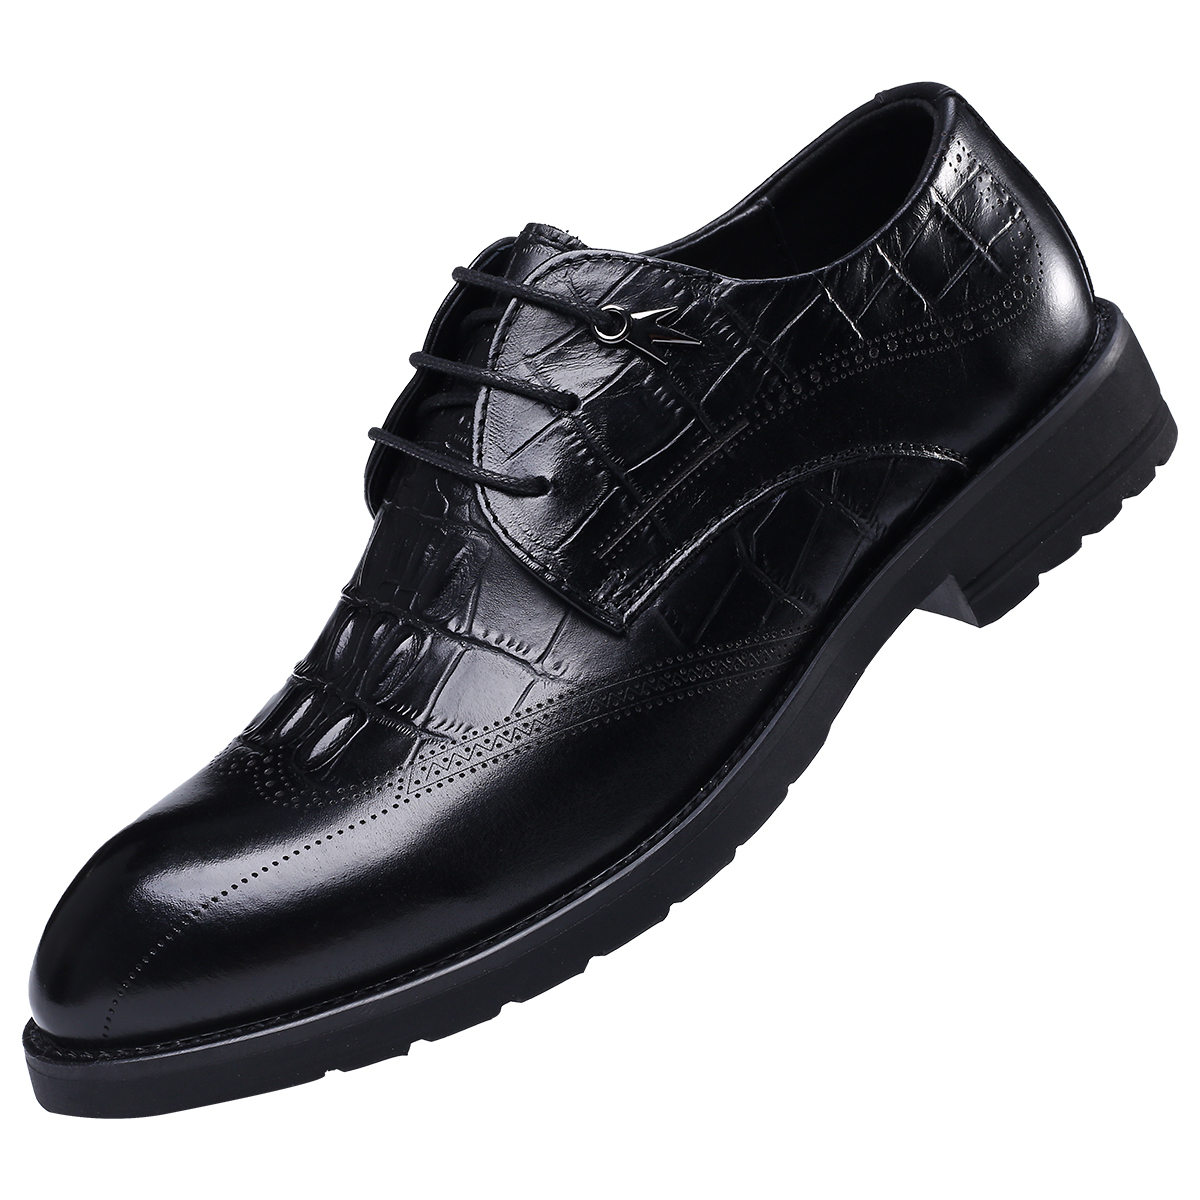 2022 new leather comfortable lace-up shoes men's black fashion shoes business dress men's shoes